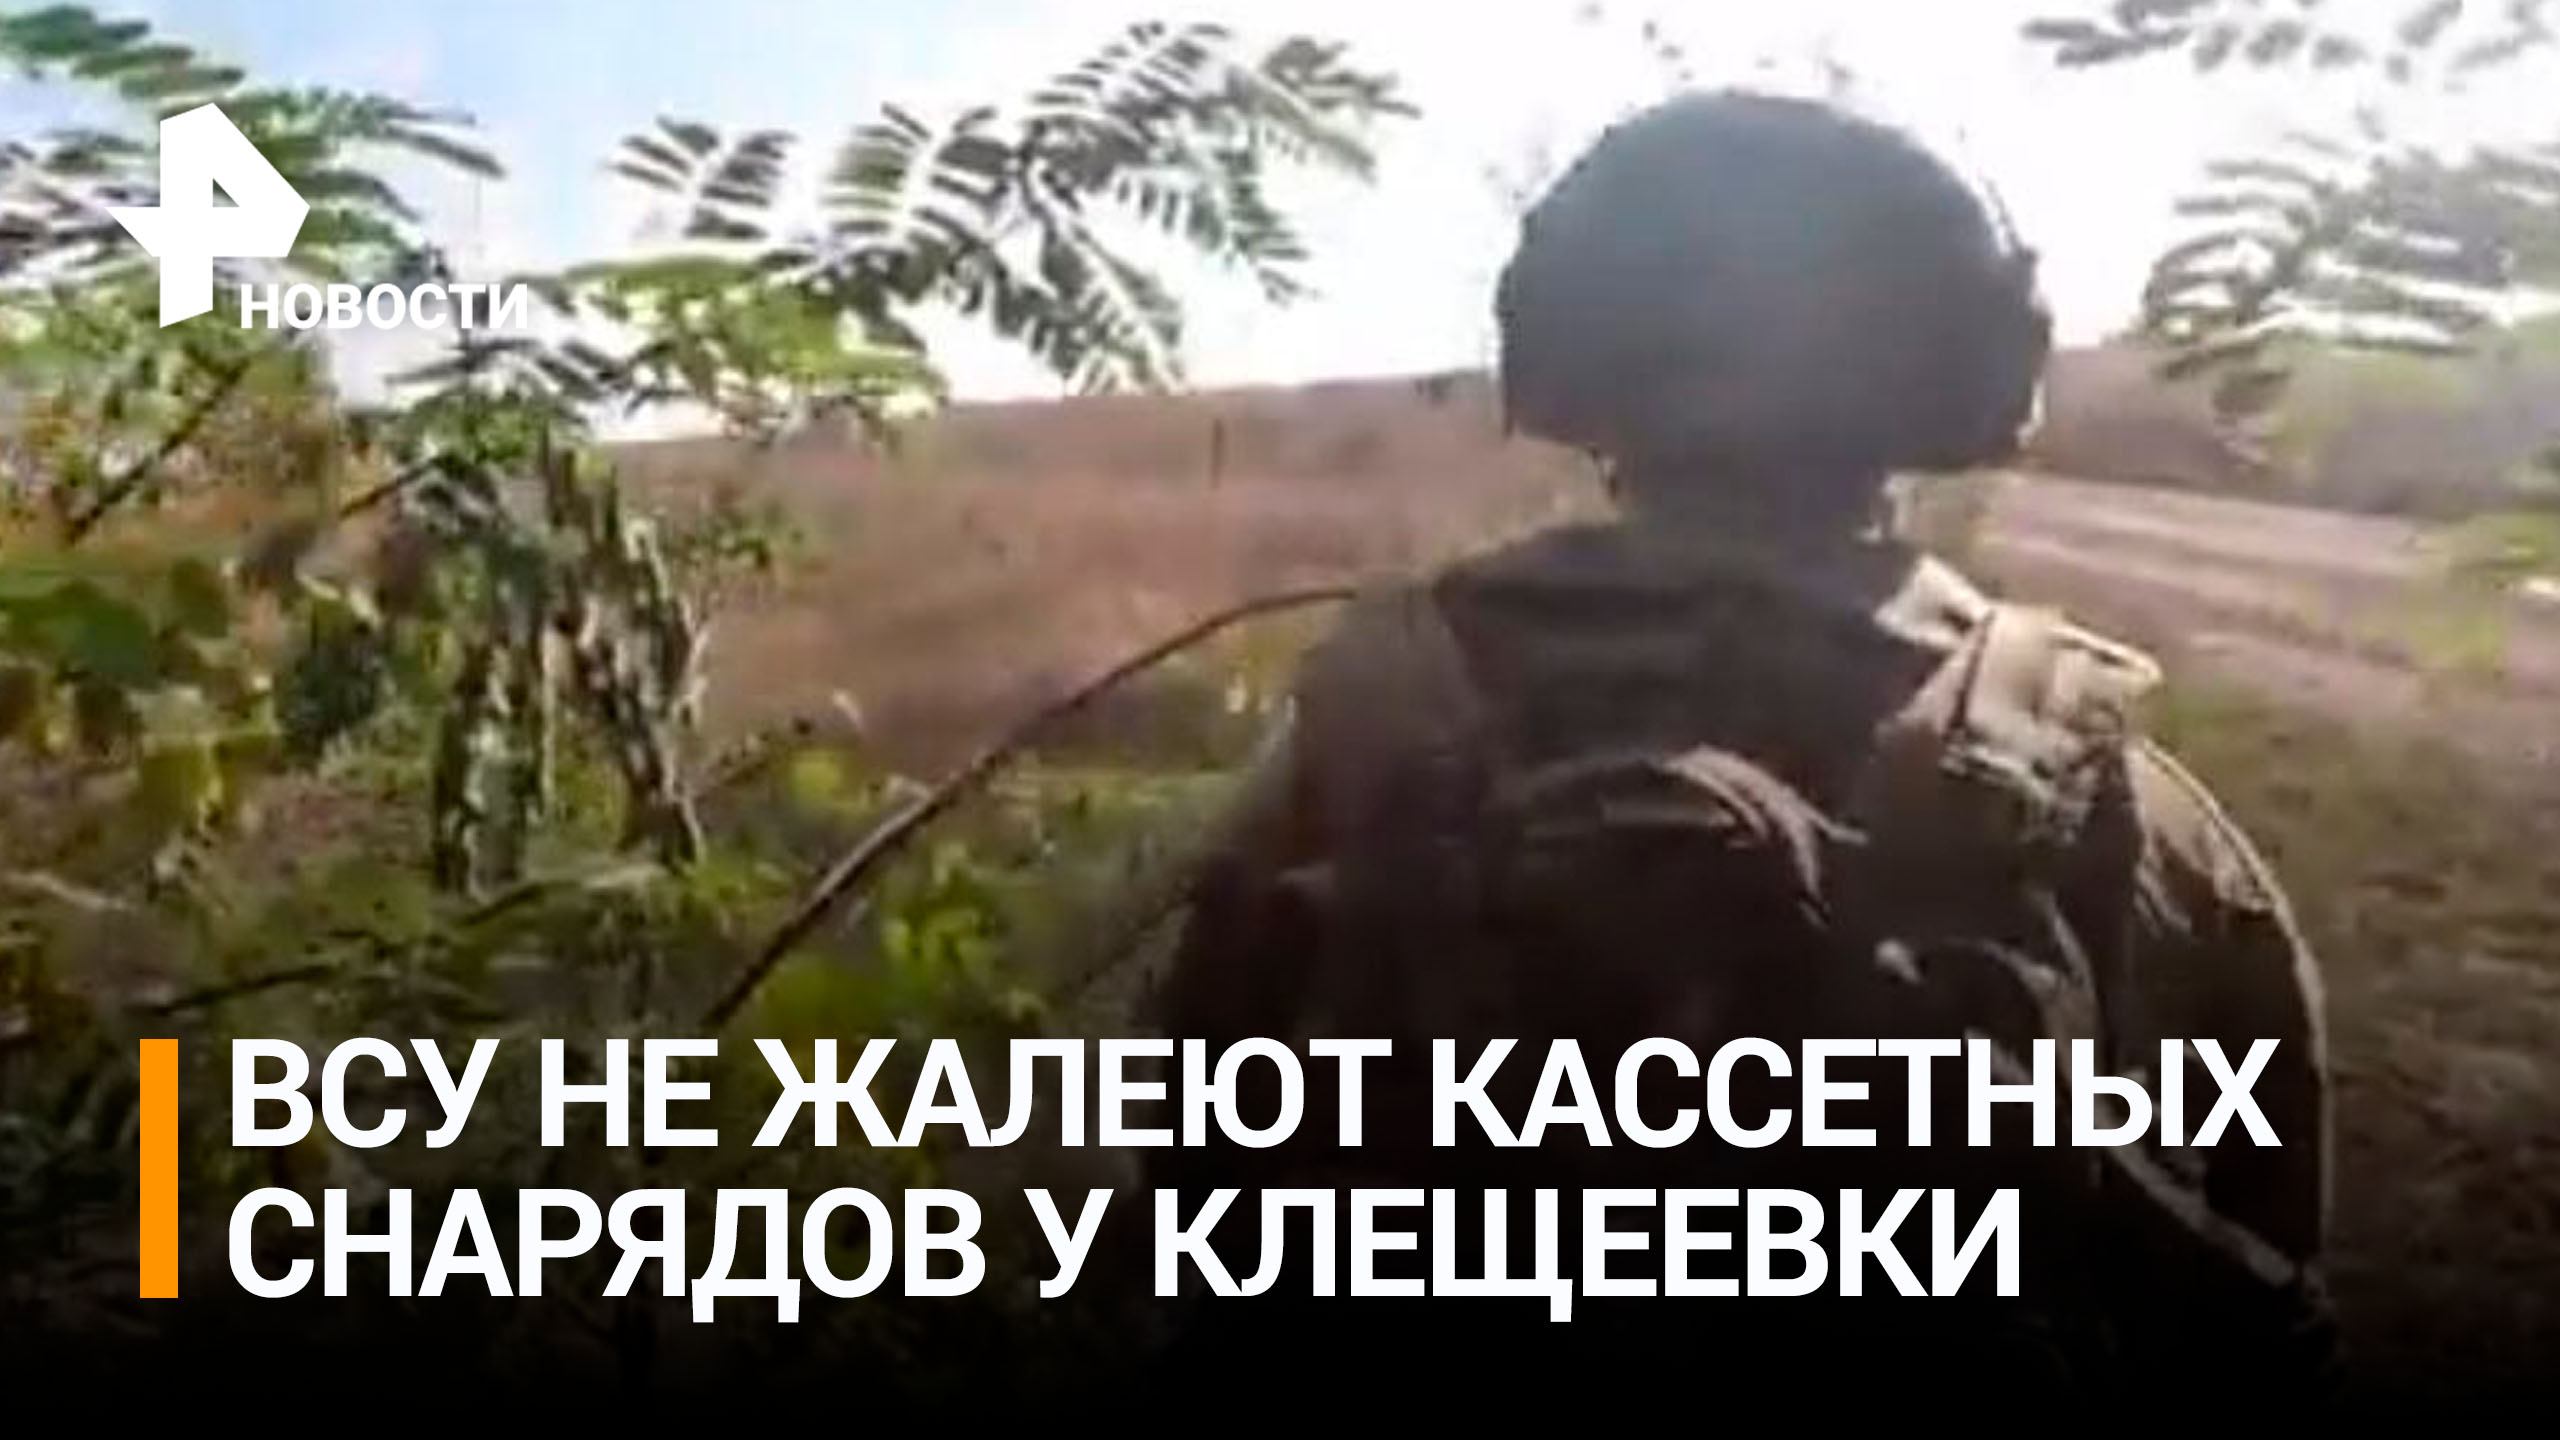 ВСУ обстреляли кассетными снарядами позиции ВС РФ под Клещеевкой / РЕН Новости